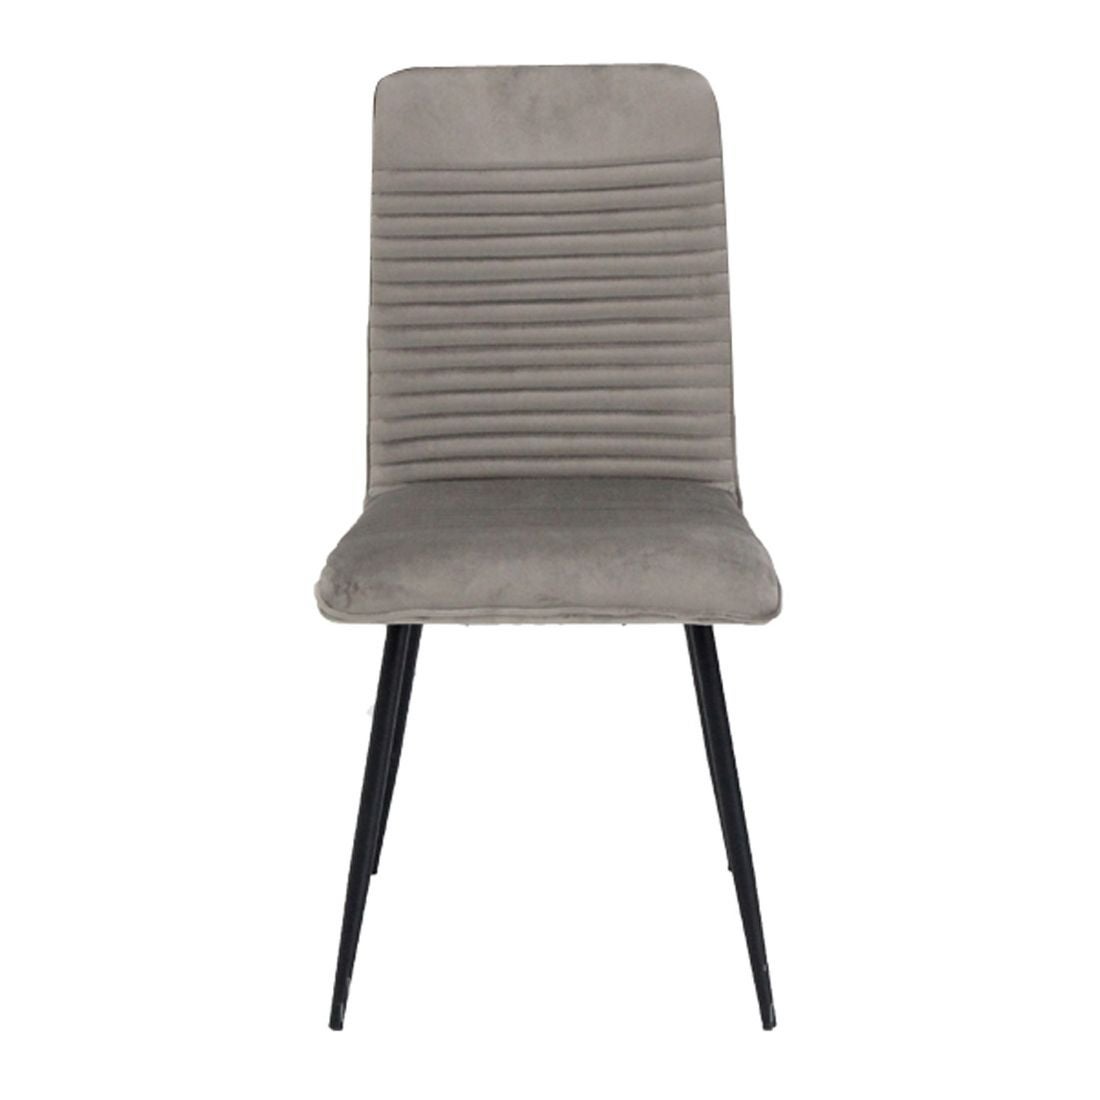 เก้าอี้ทานอาหาร เก้าอี้เหล็กเบาะผ้า รุ่น Yobi-SB Design Square